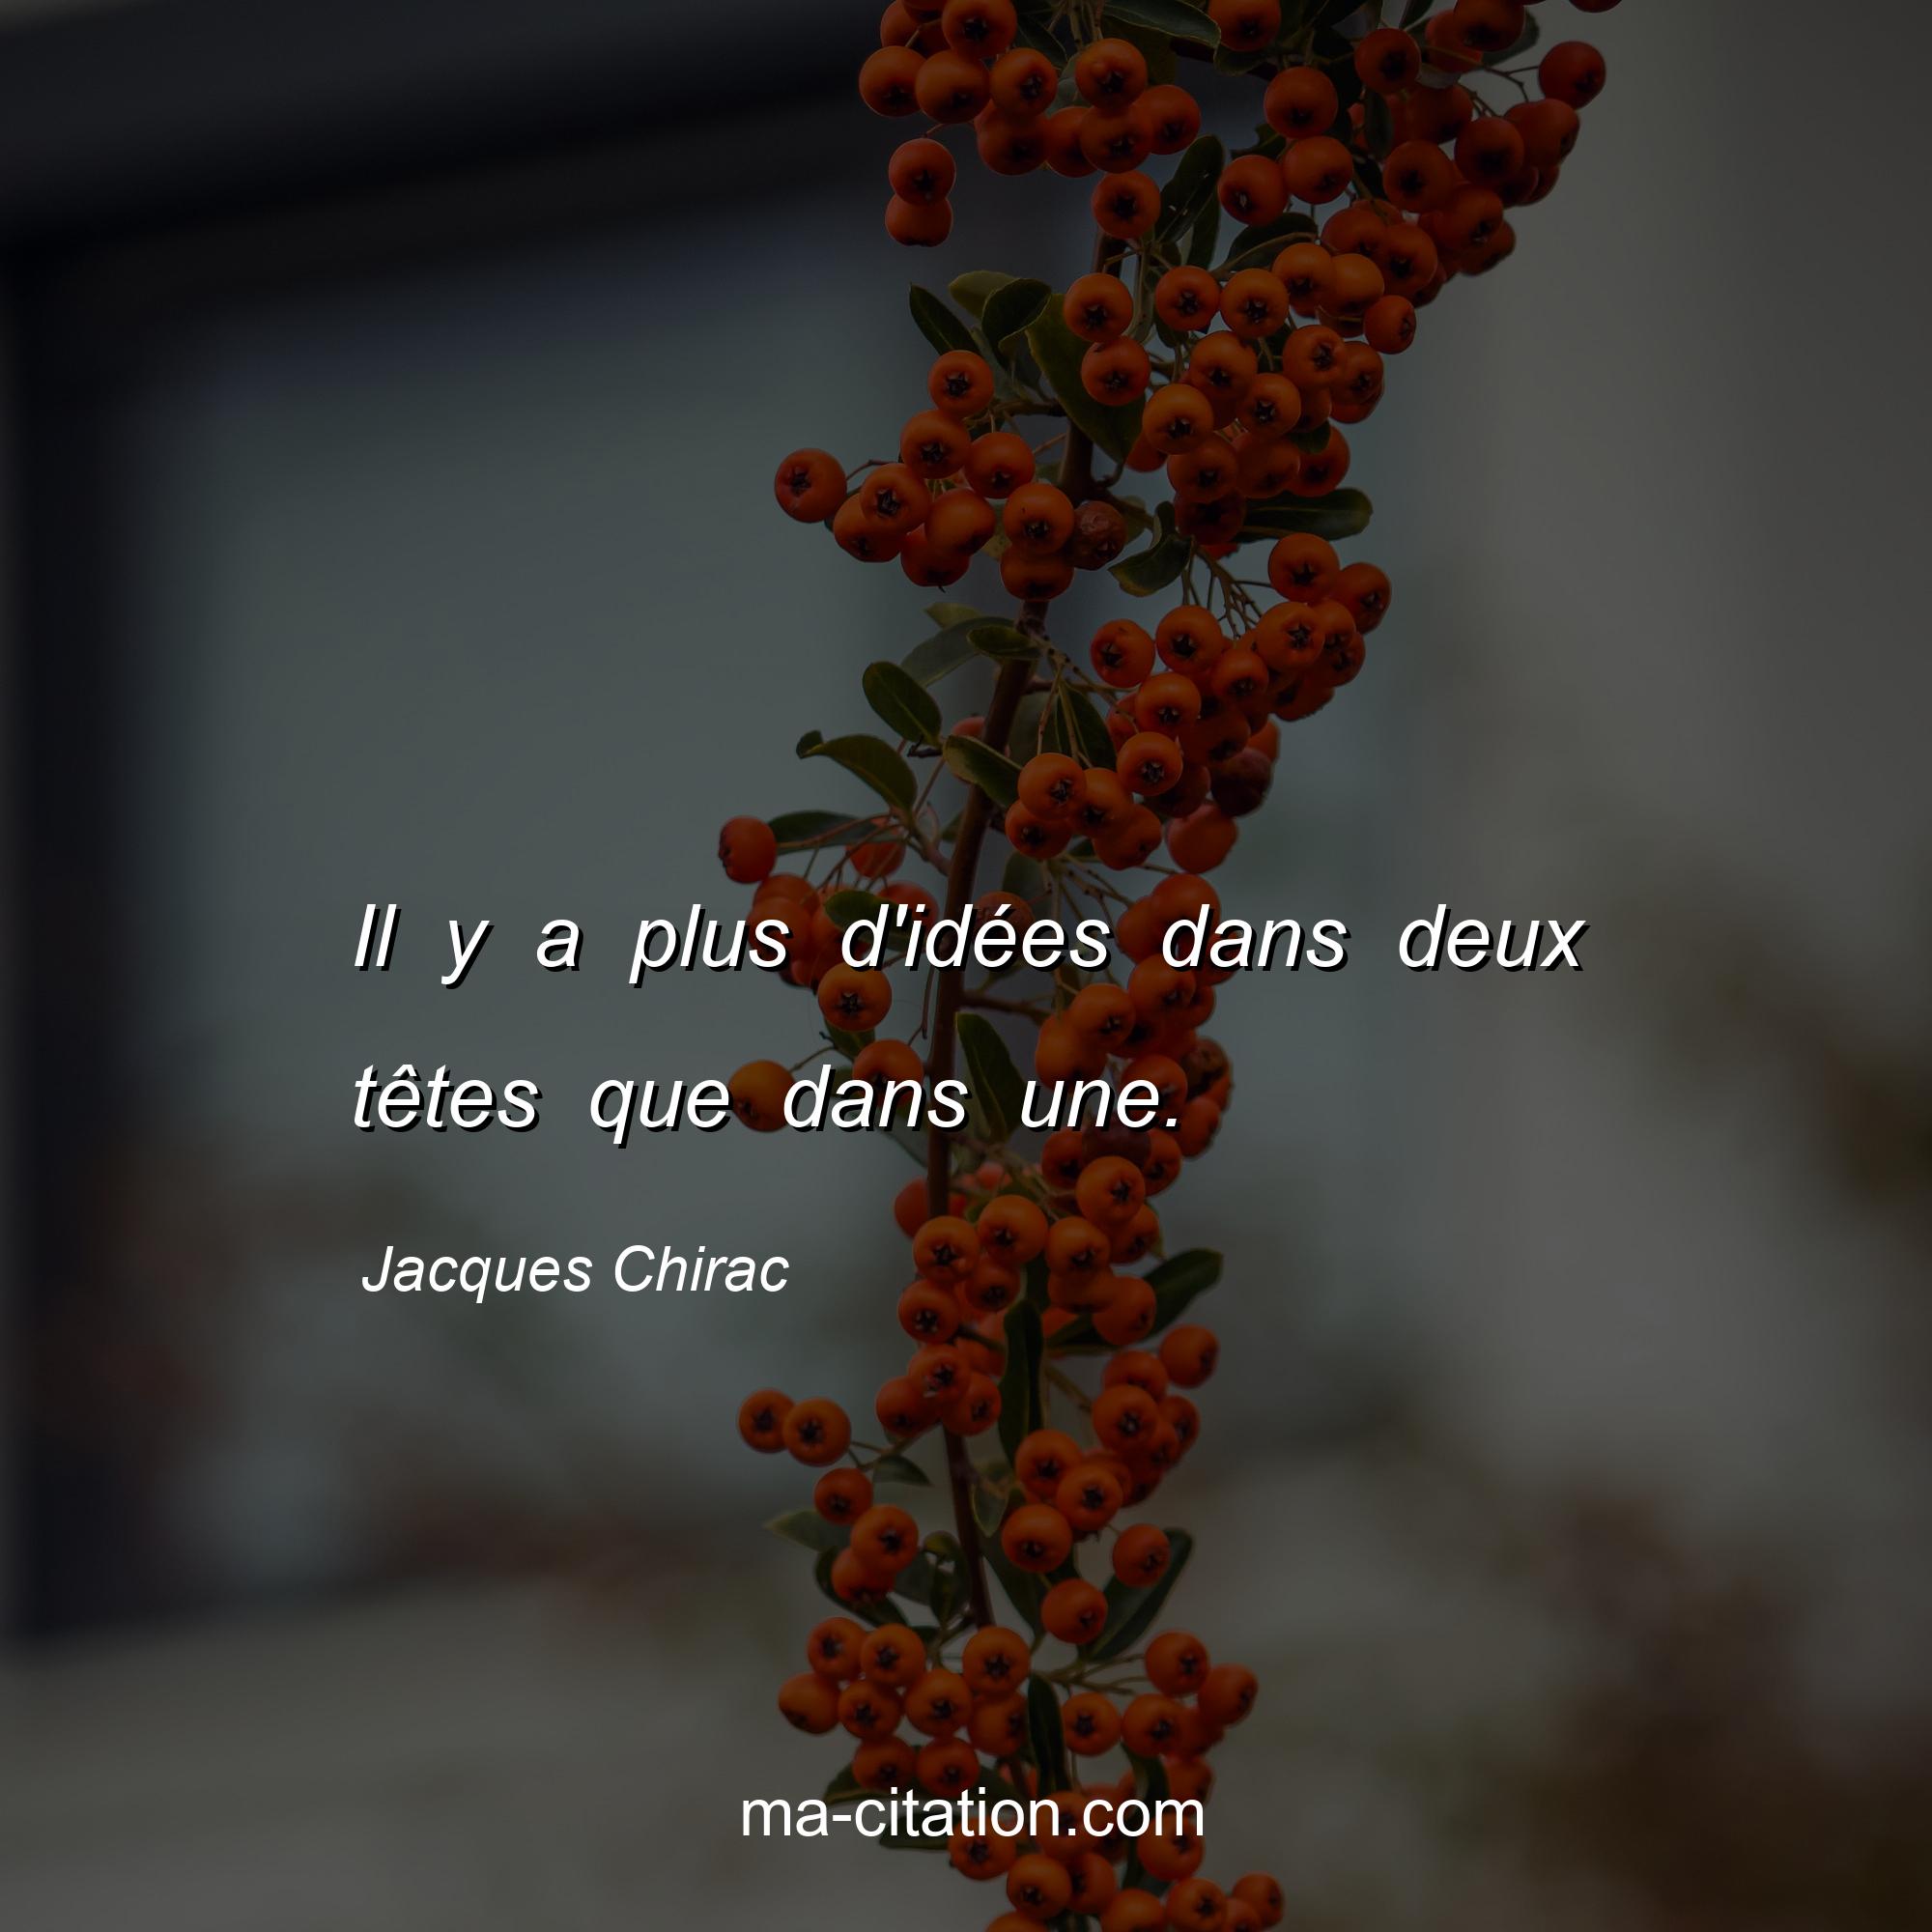 Jacques Chirac : Il y a plus d'idées dans deux têtes que dans une.